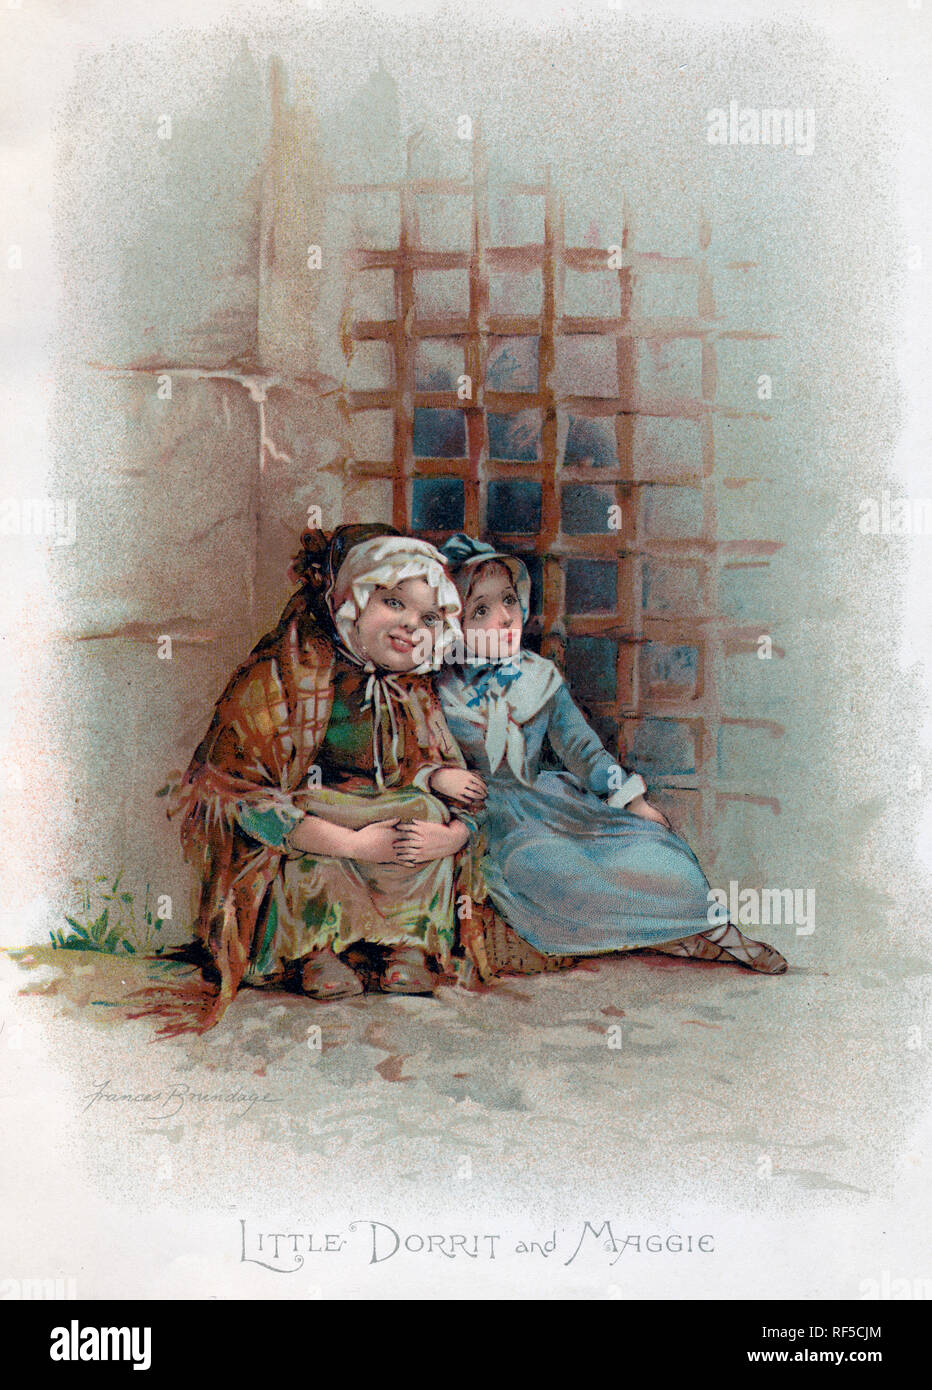 Piccolo Dorrit e Maggie, c1890s. Di Frances Brundage (1854-1937). Little Dorrit è un romanzo di Charles Dickens, originariamente pubblicato in serie tra il 1855 e il 1857. Foto Stock